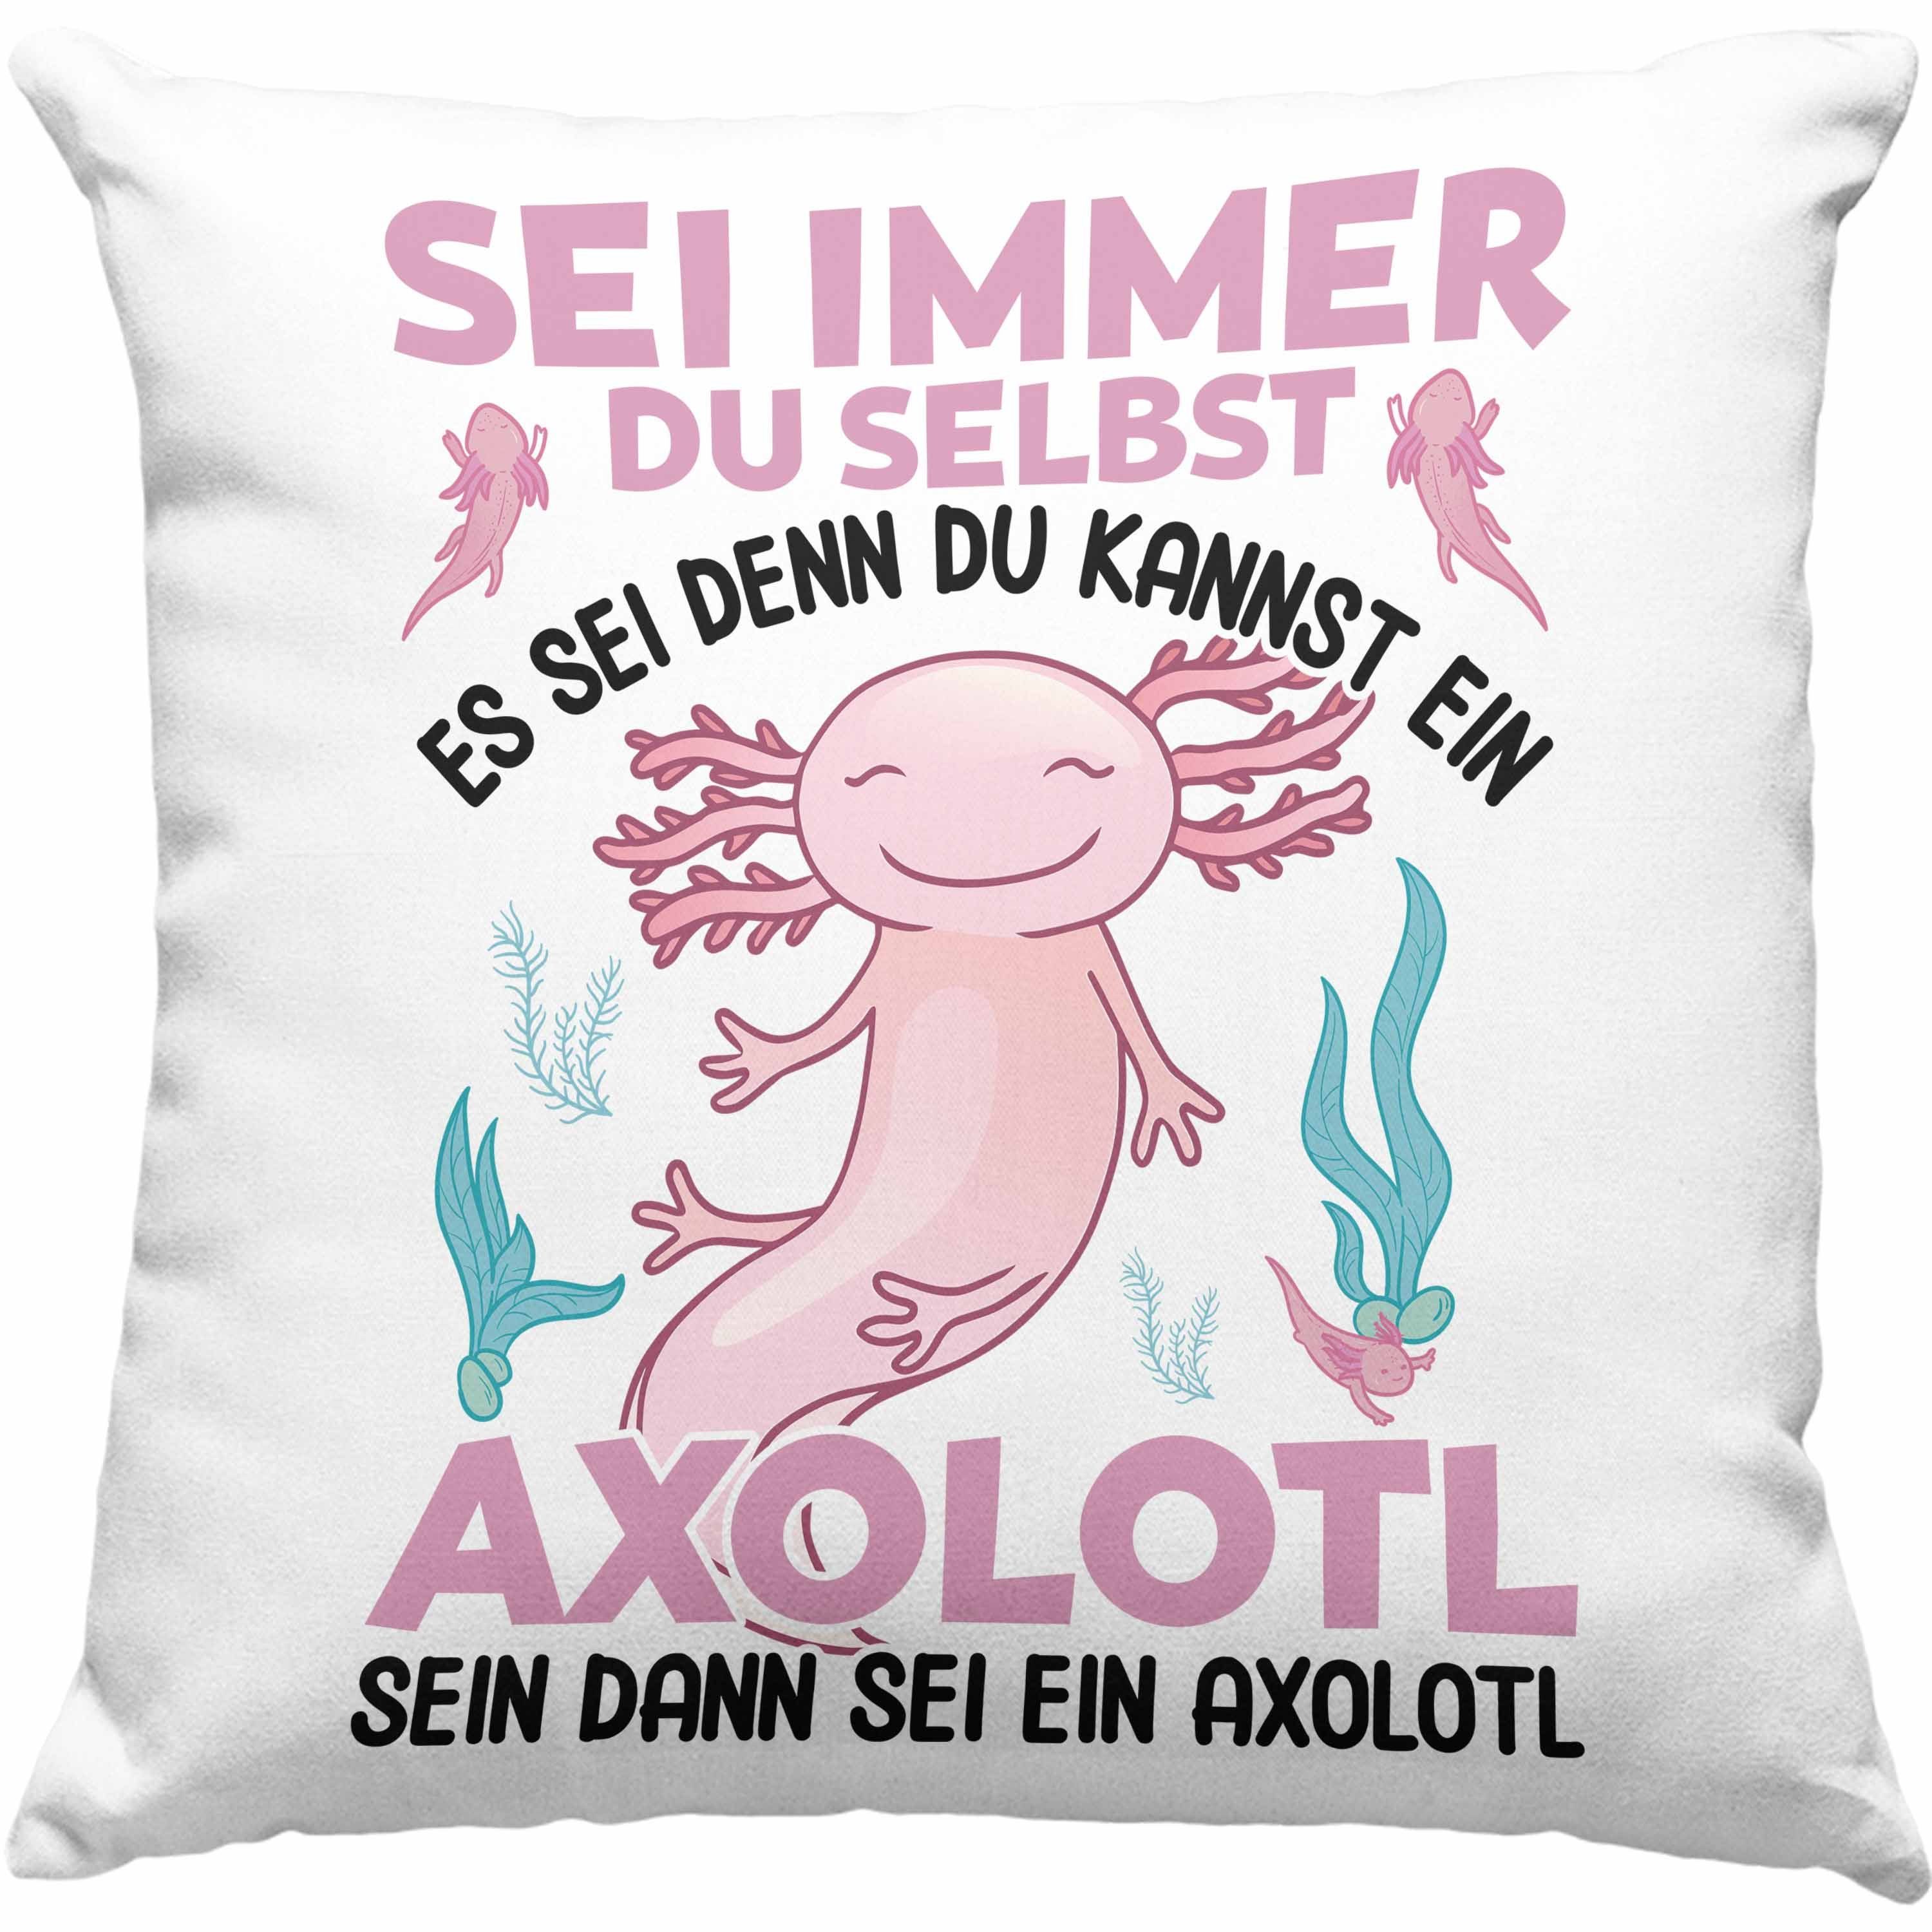 Trendation Dekokissen Trendation - Axolotl Haustier Kissen Geschenk Axolotl-Liebhaber Schwanzlurch Geschenkidee Lustig - Sei Immer Du Selbst Dekokissen mit Füllung 40x40 Grün